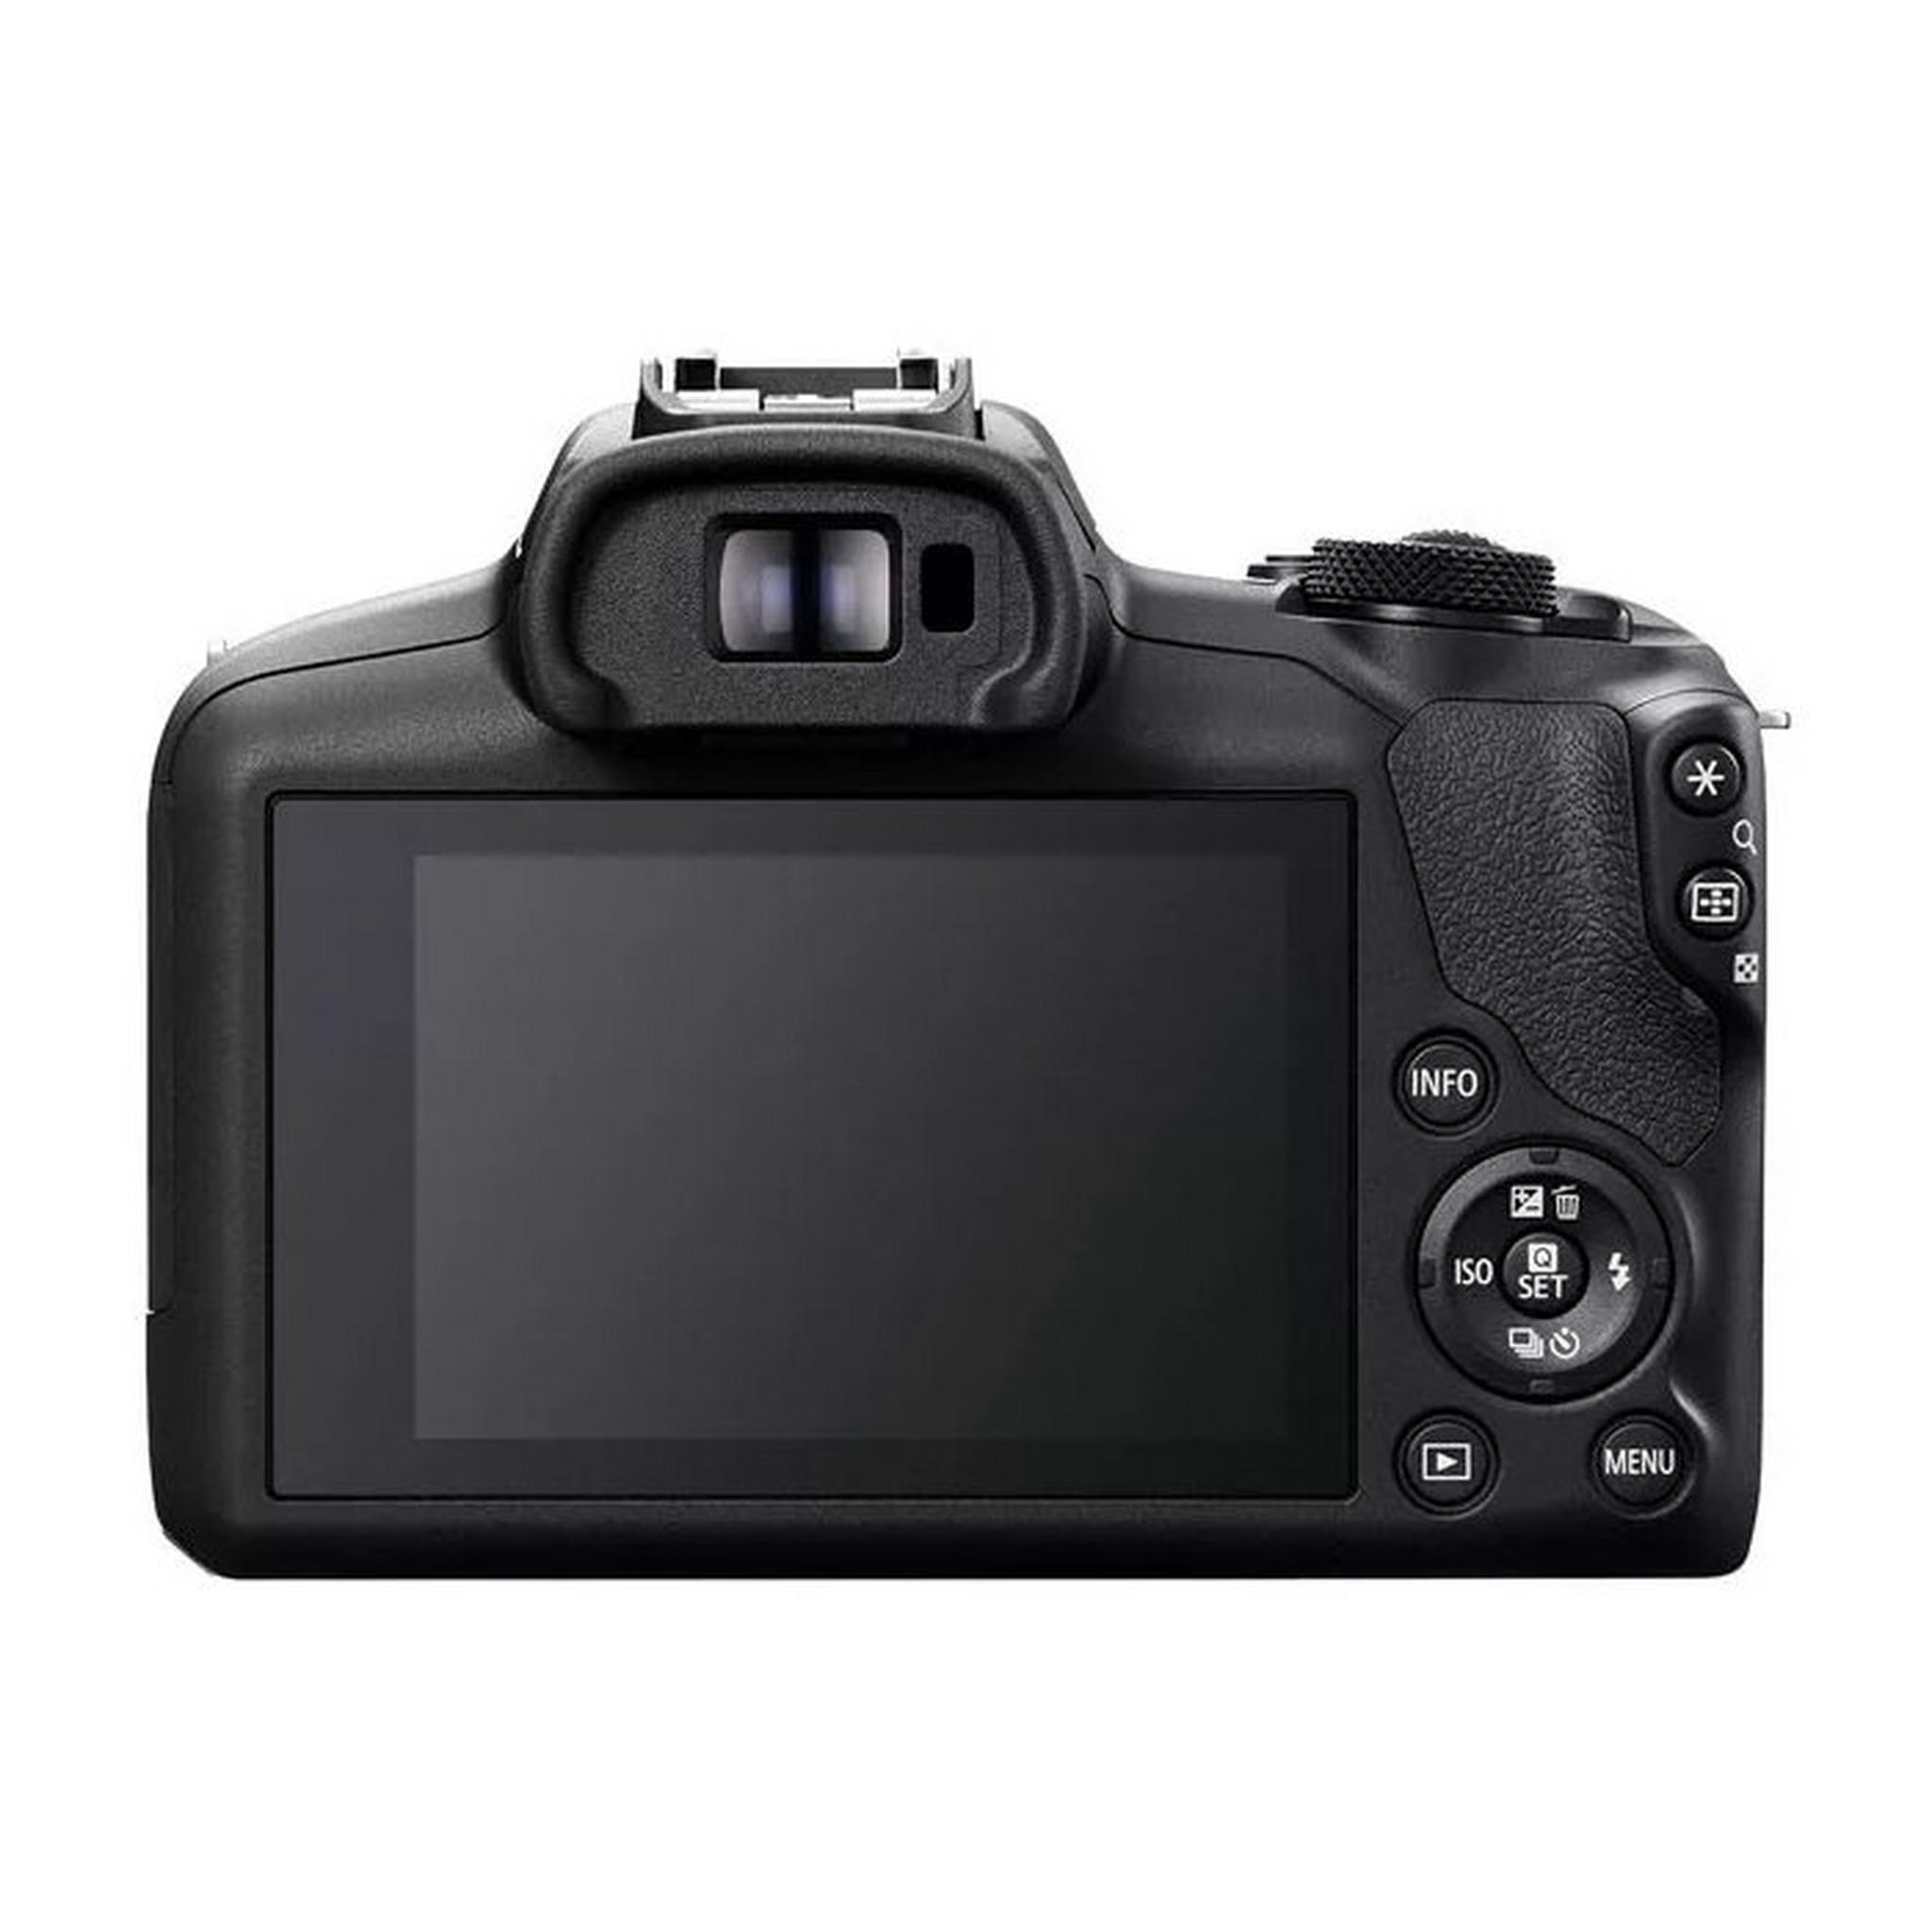 كاميرا إي أوه أس أر100 بدون مرآة مع طقم عدسات 18-45 ملم و55-210 ملم من كانون، 6052C023AA - أسود